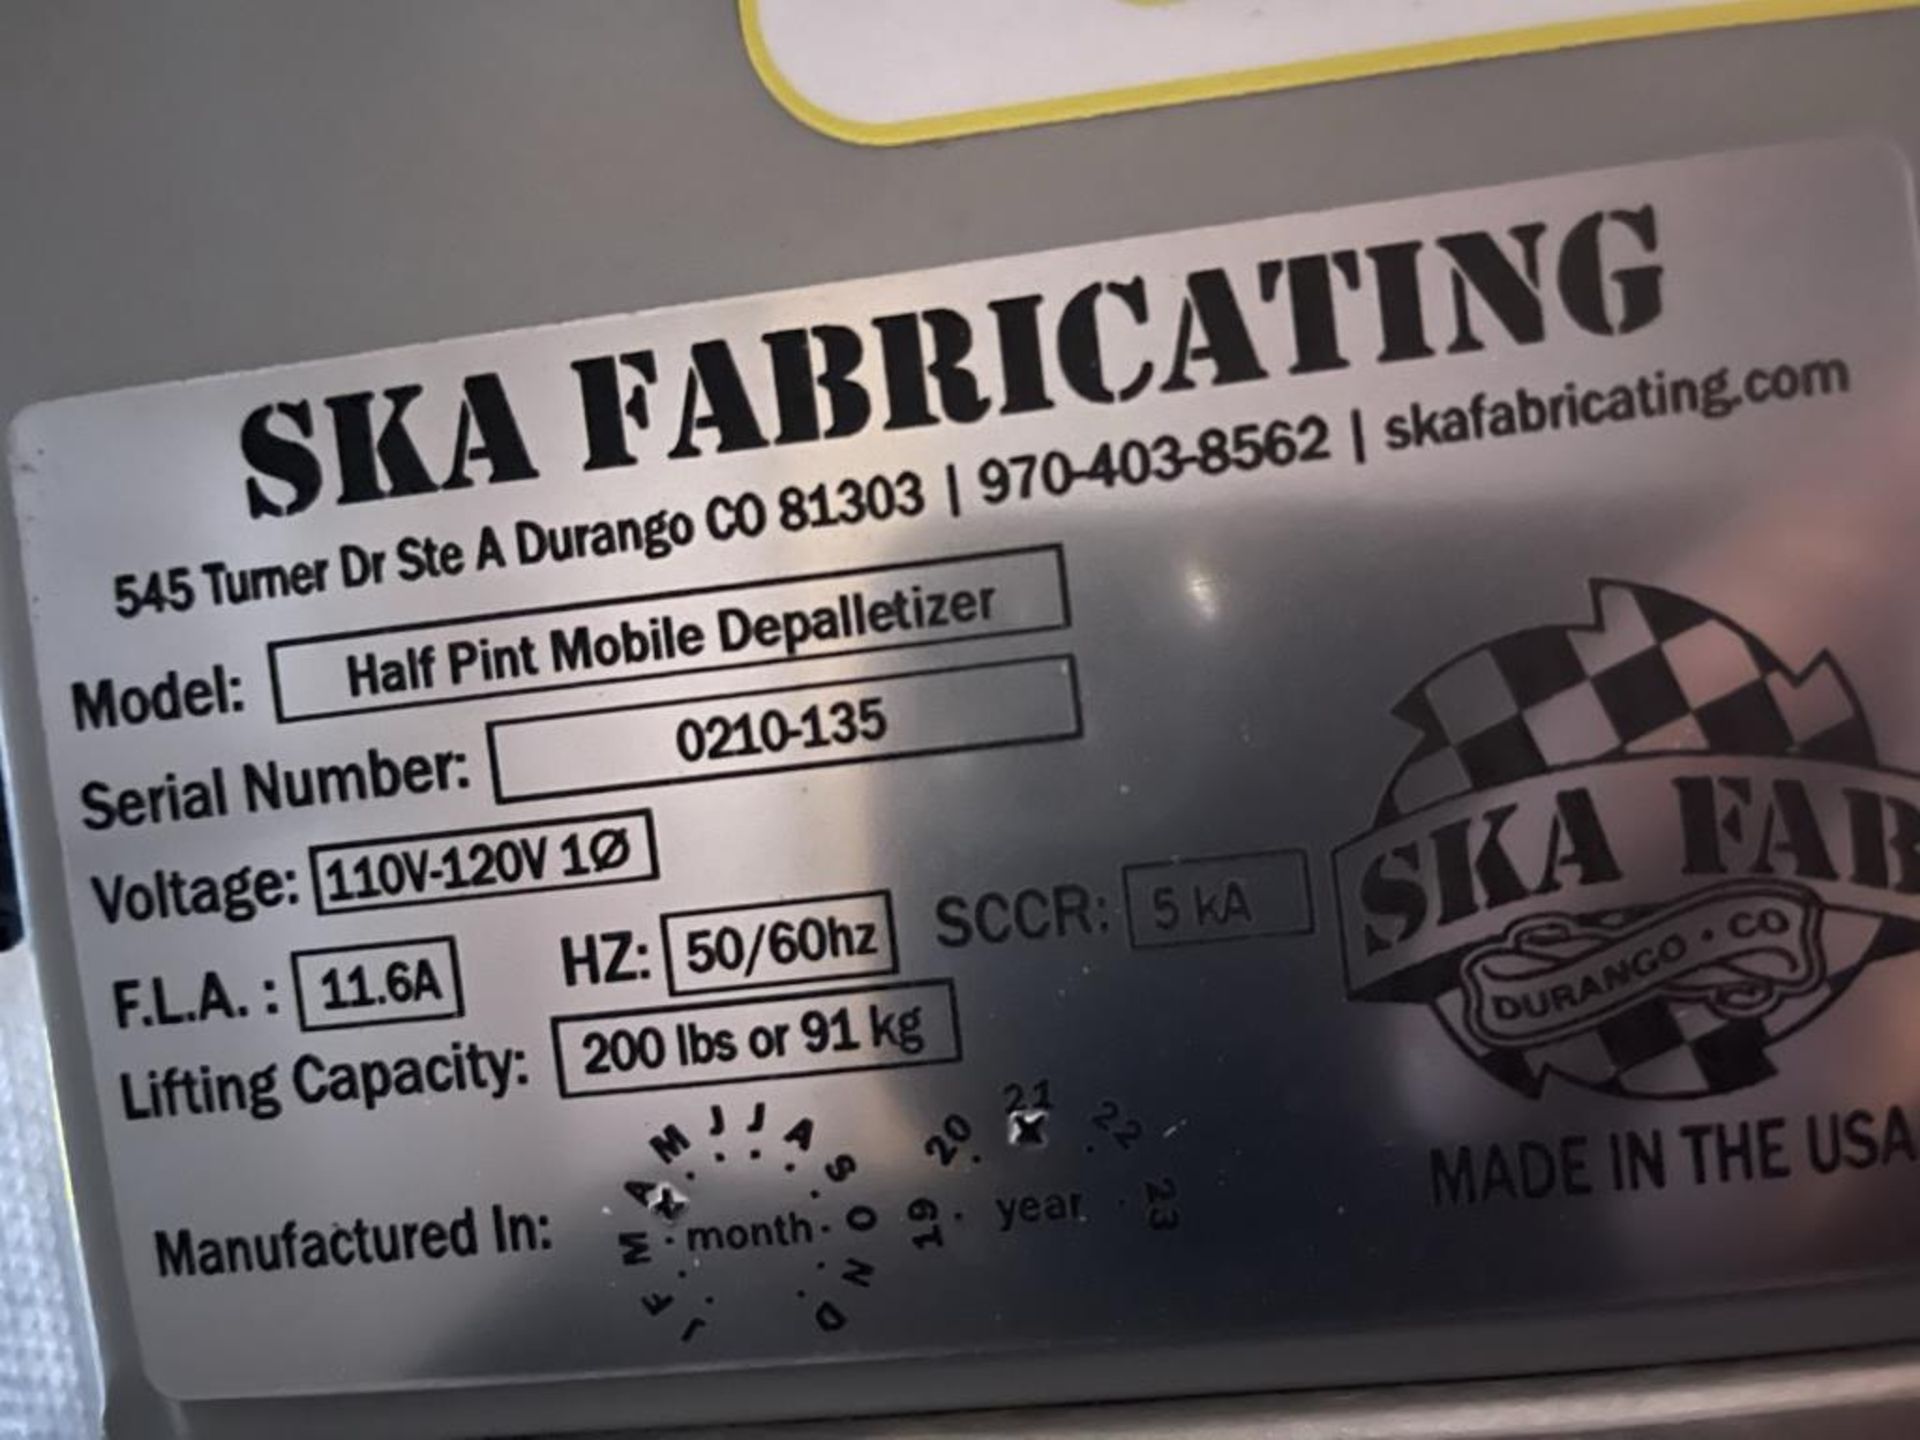 Ska Fabricating Depalletizer - Image 4 of 5